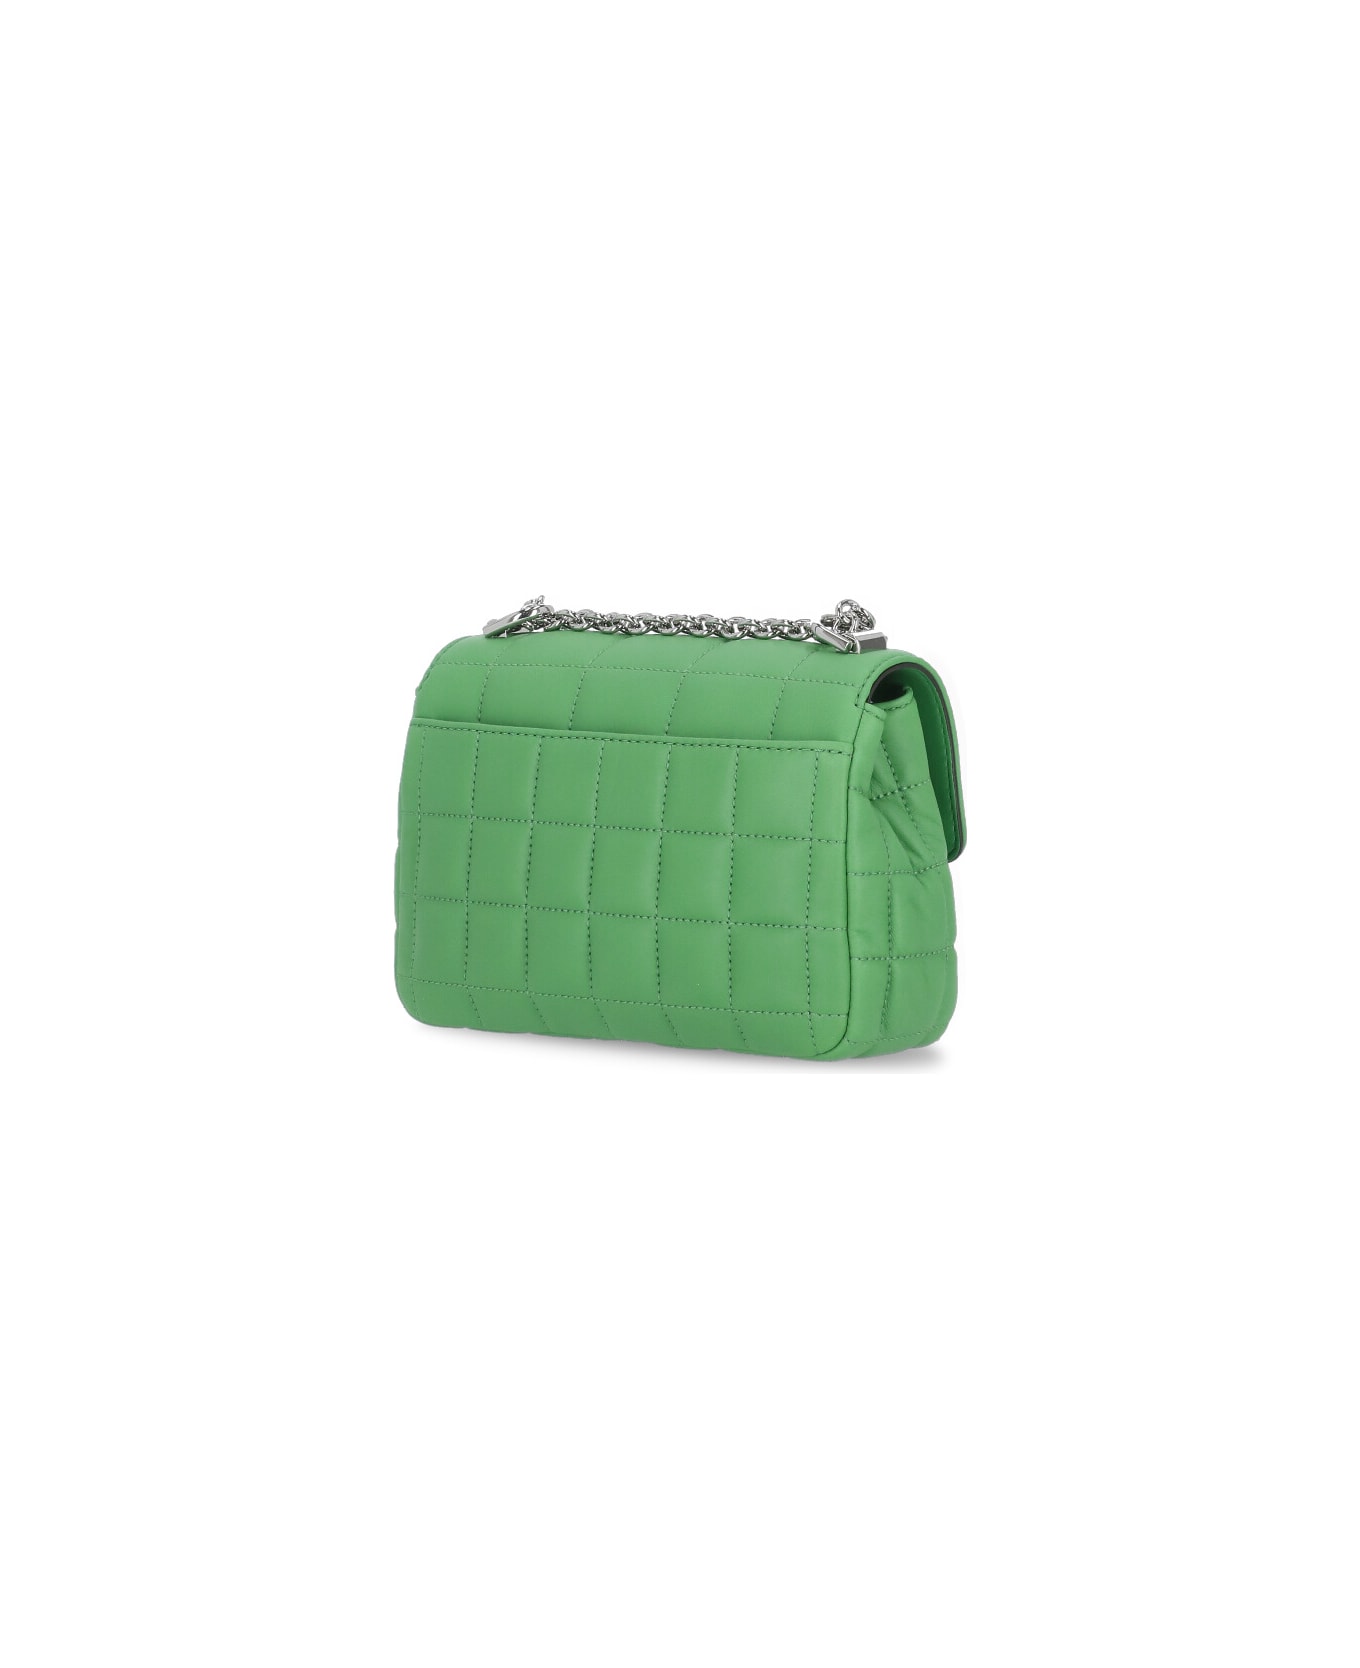 Michael Kors Soho Quilted Shoulder Bag - Green